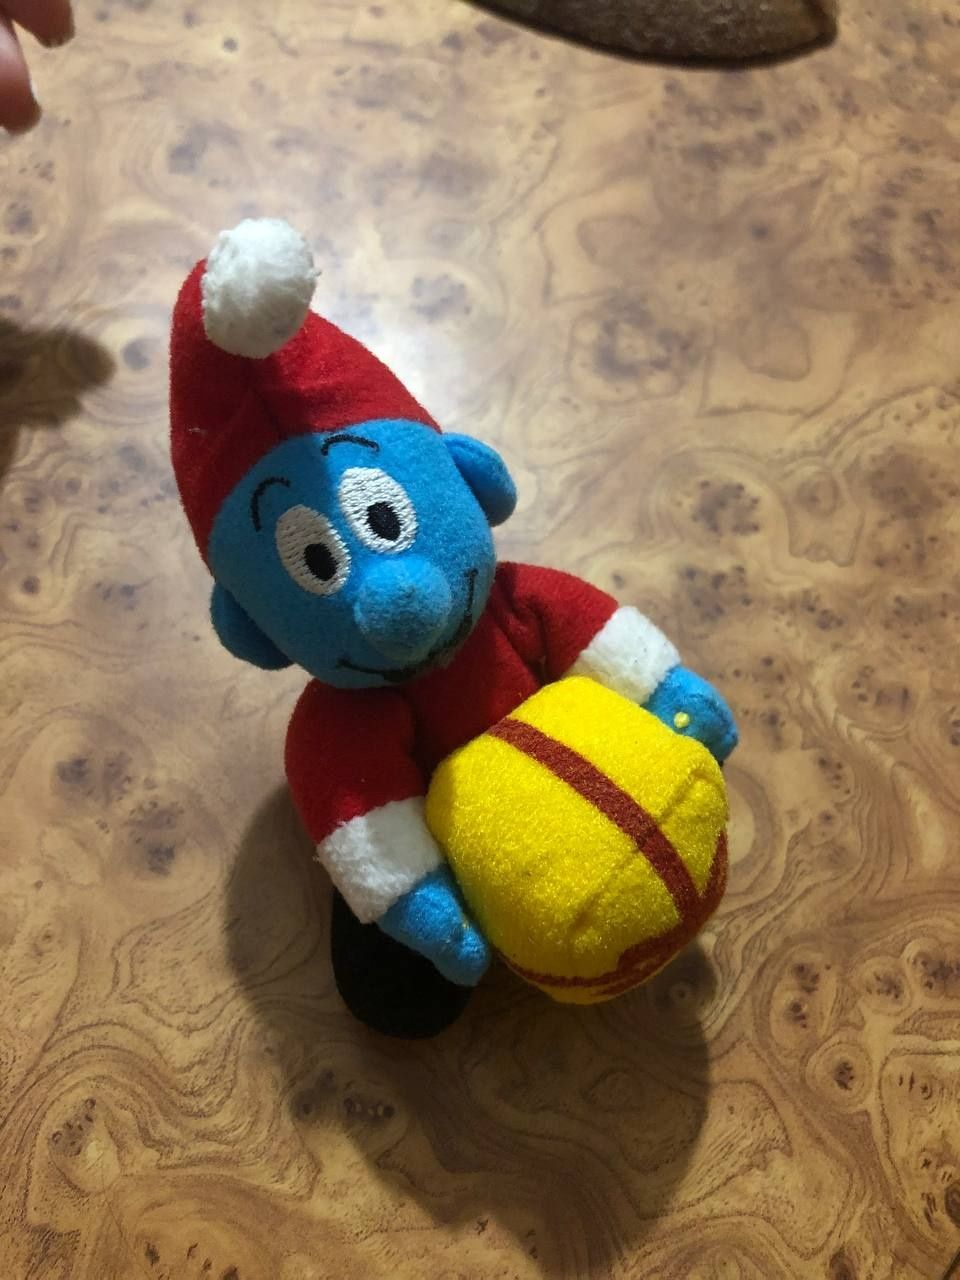 Мягка новорічна іграшка Смурфик Санта попригунчик 2000р.у